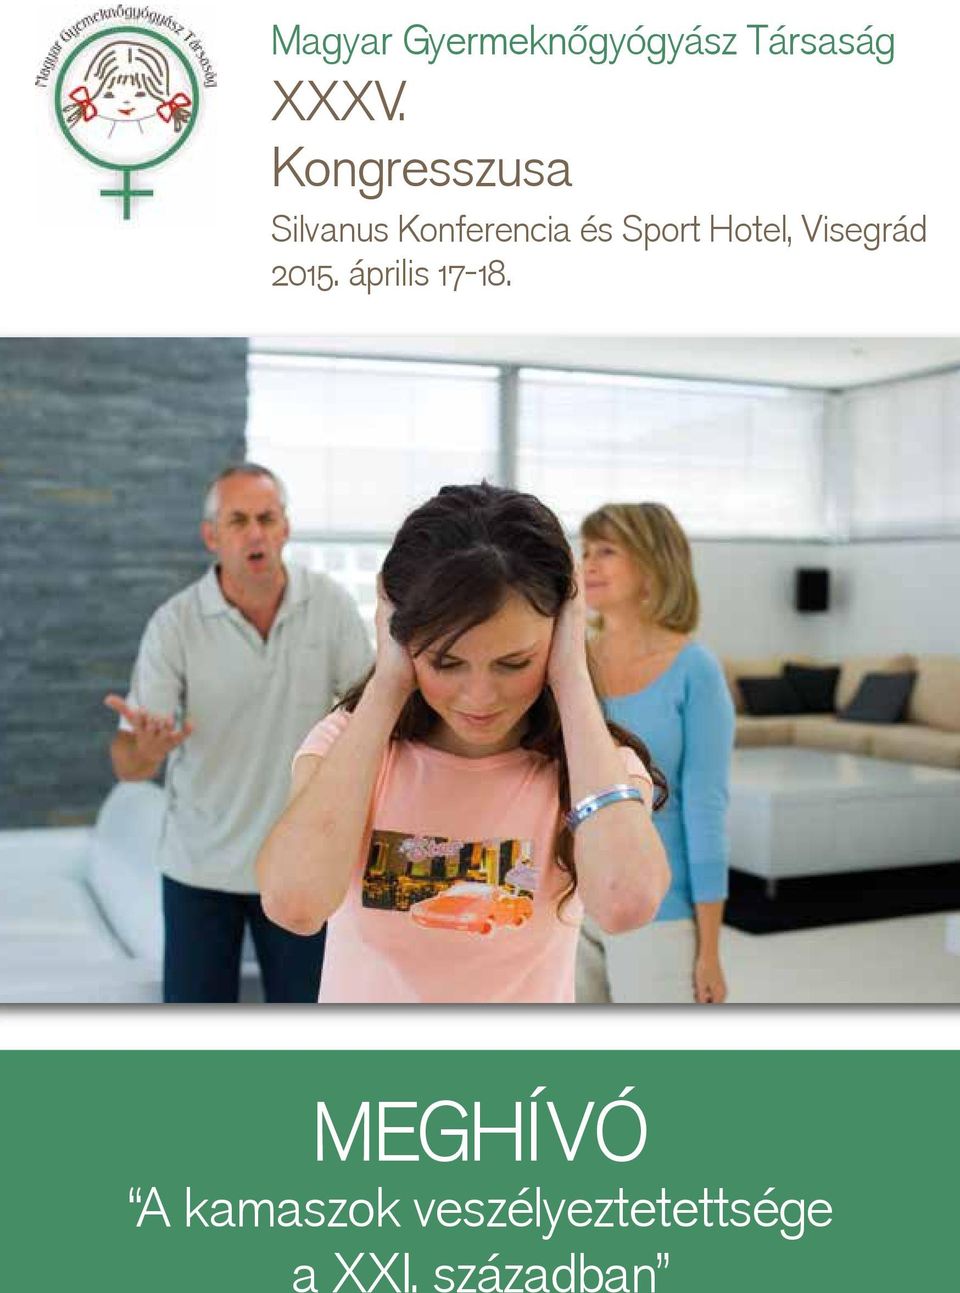 Hotel, Visegrád 2015. április 17-18.